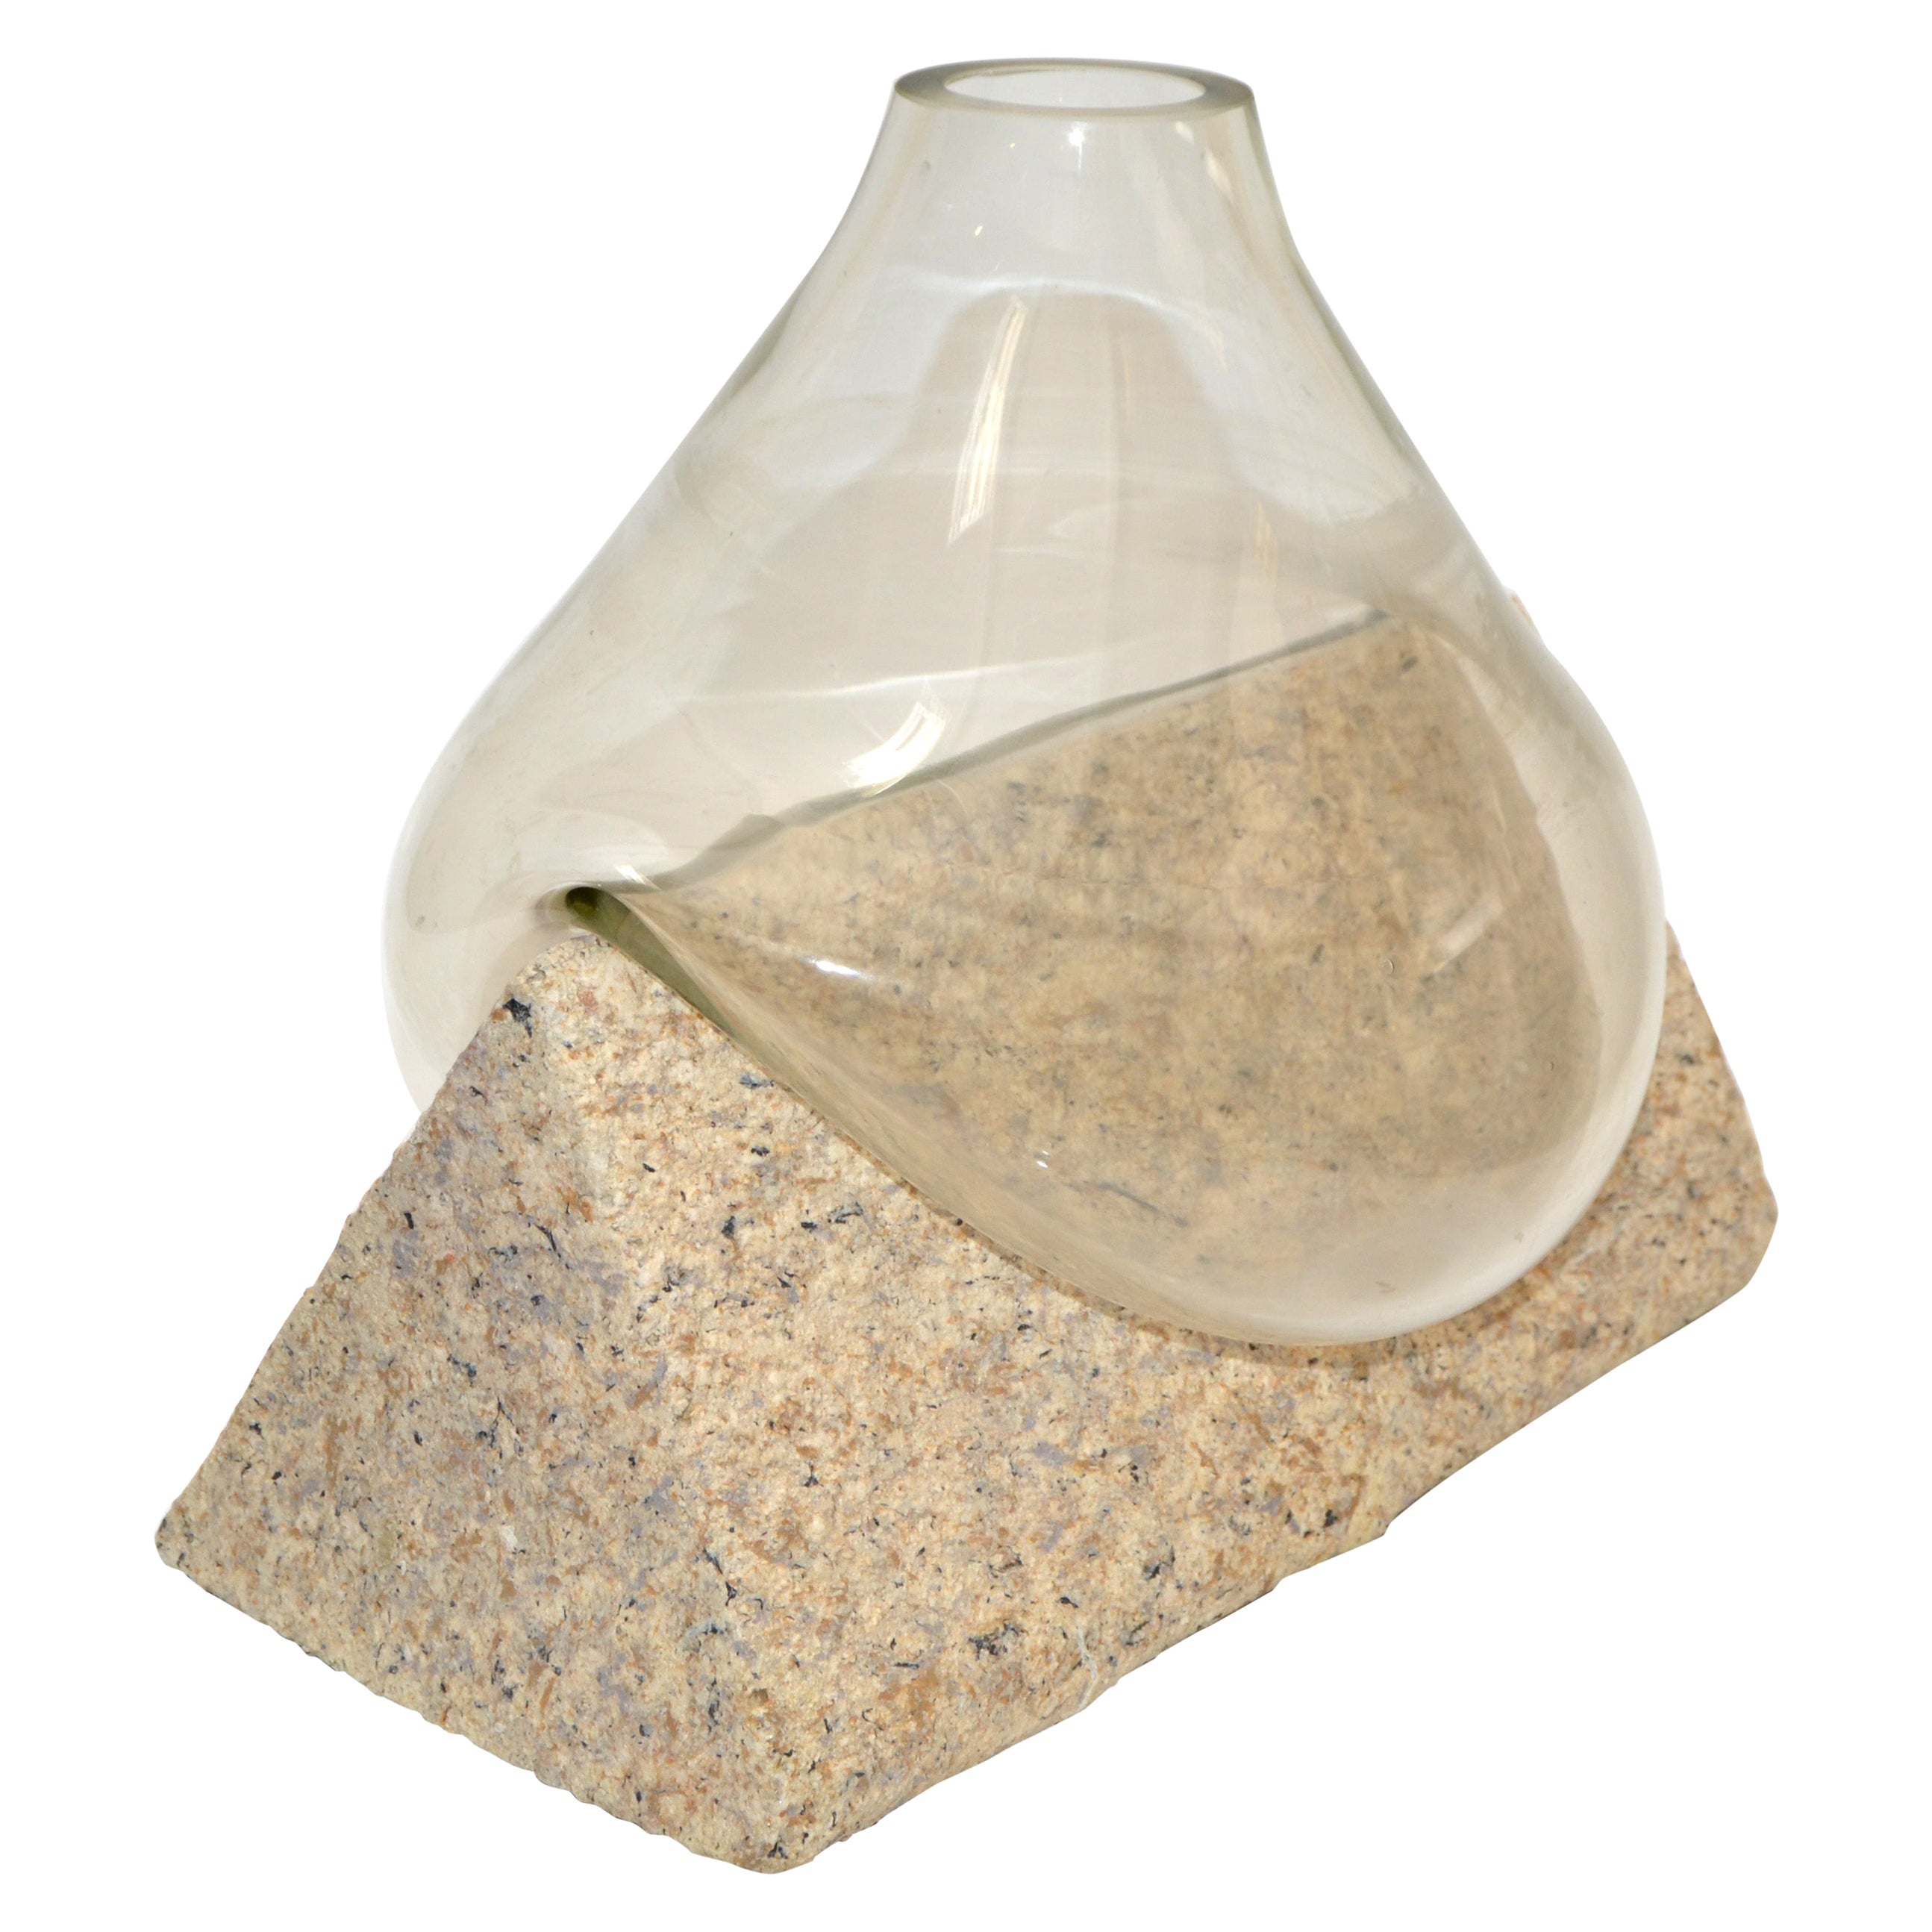 Vase 2 pièces en verre soufflé sculptural moderne de style mi-siècle moderne en forme de triangle en pierre